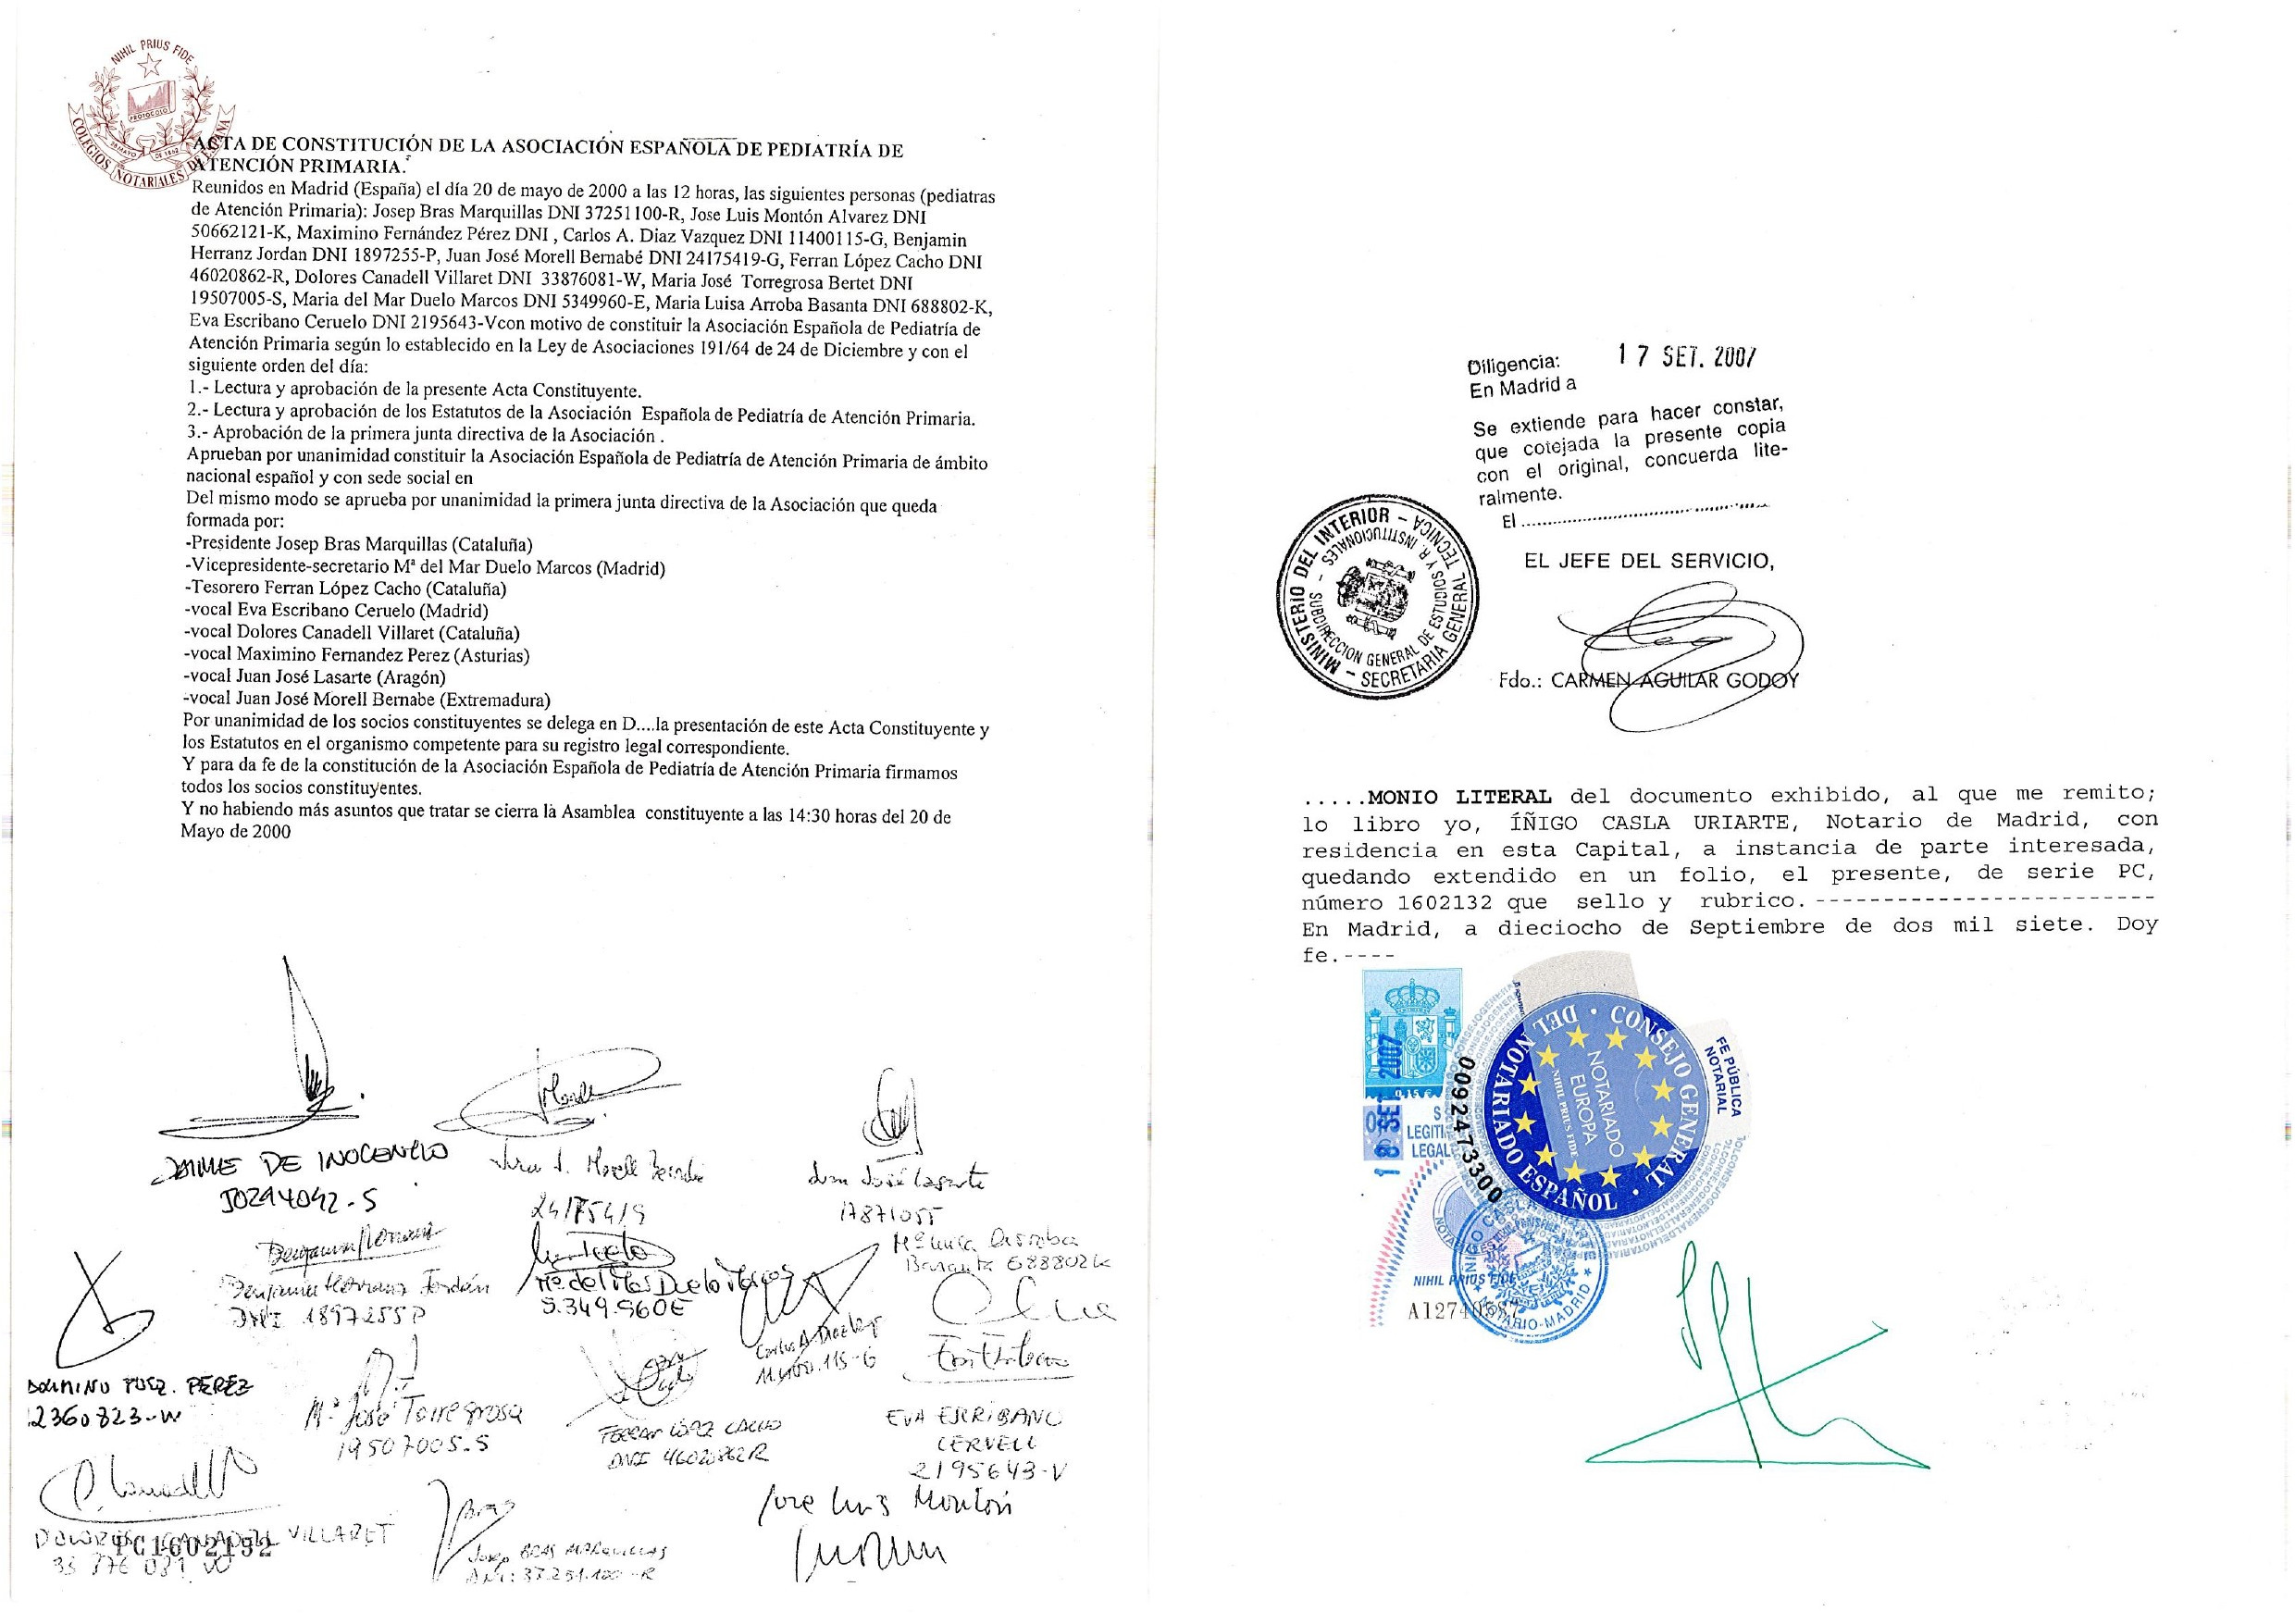 Acta de constitución de la AEPap firmada el 20 de mayo de 2000 (págs. 1 y 2)